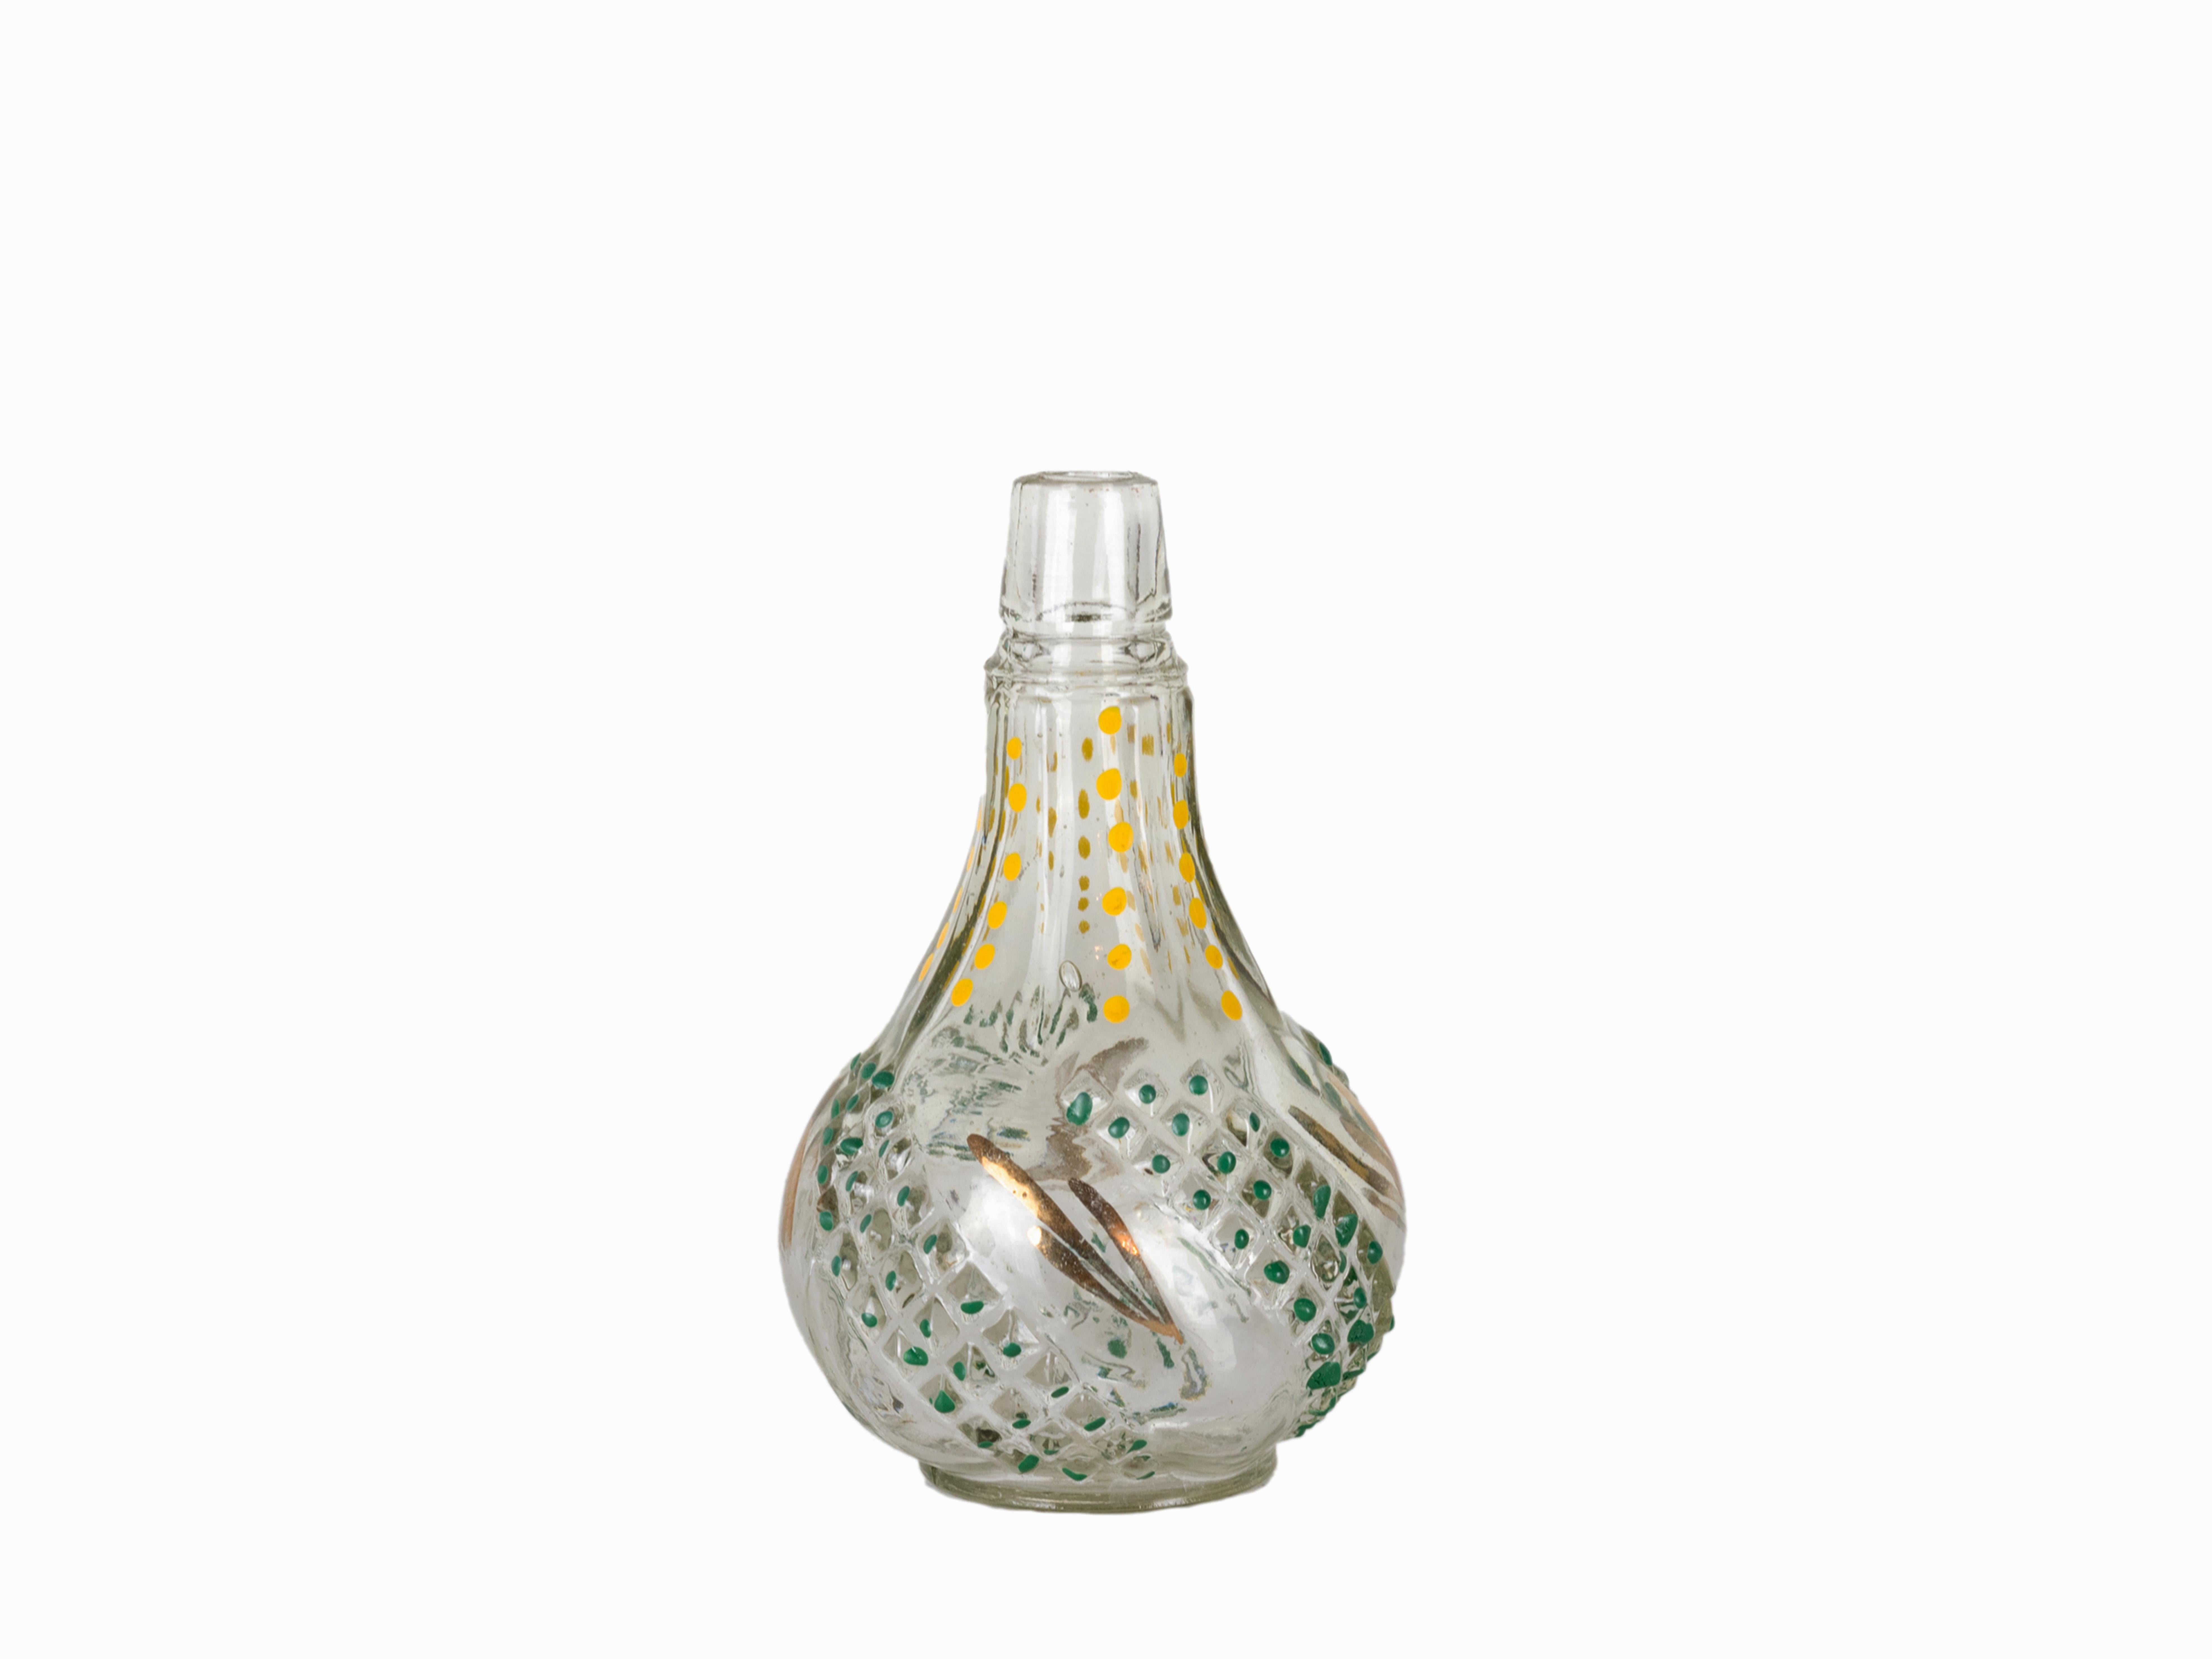 Ein mehrfarbiges Parfümverdampfer-Flaschenglas  mit detailliertem Blumendesign. 
Hat nur den Glasteil mit der Marke 